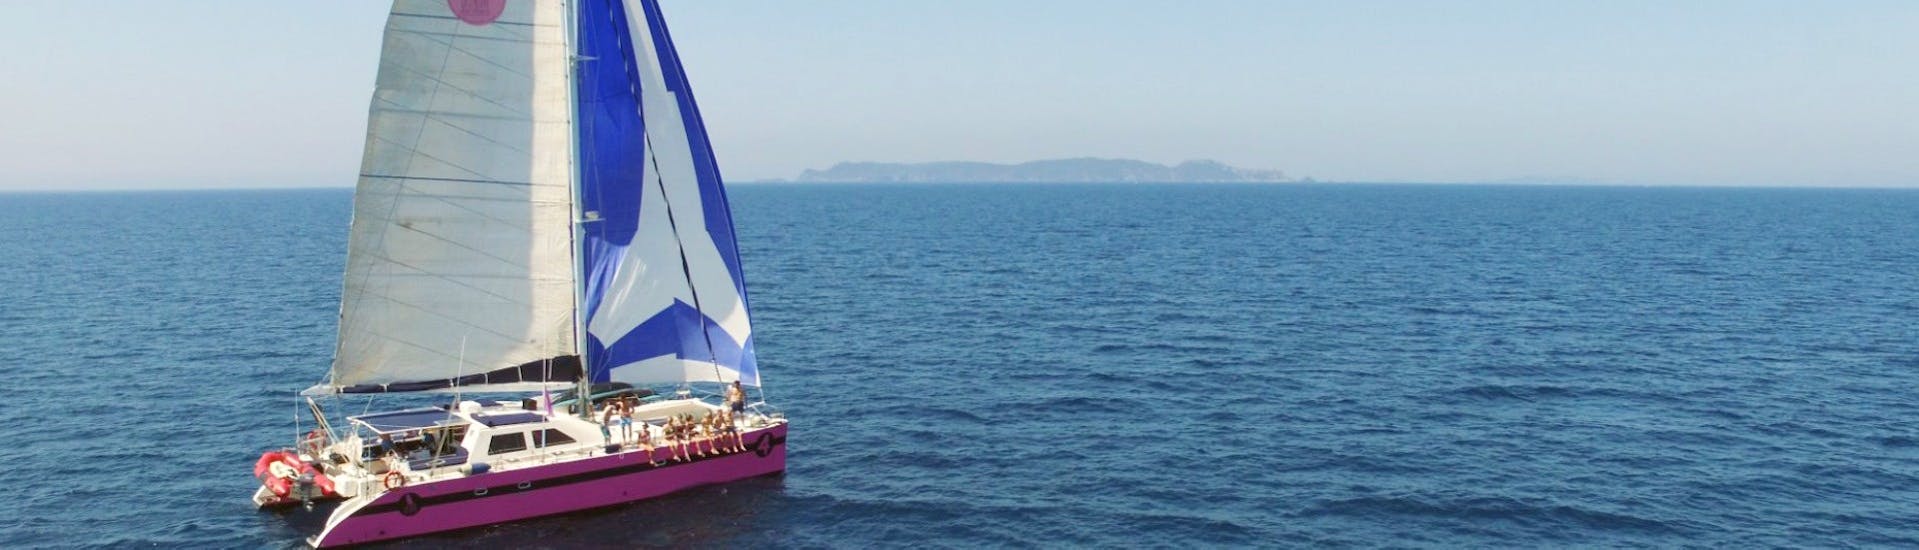 Vue lors de la Balade en catamaran aux Salins et dans la baie des Canoubiers avec Caseneuve Maxi Catamaran.